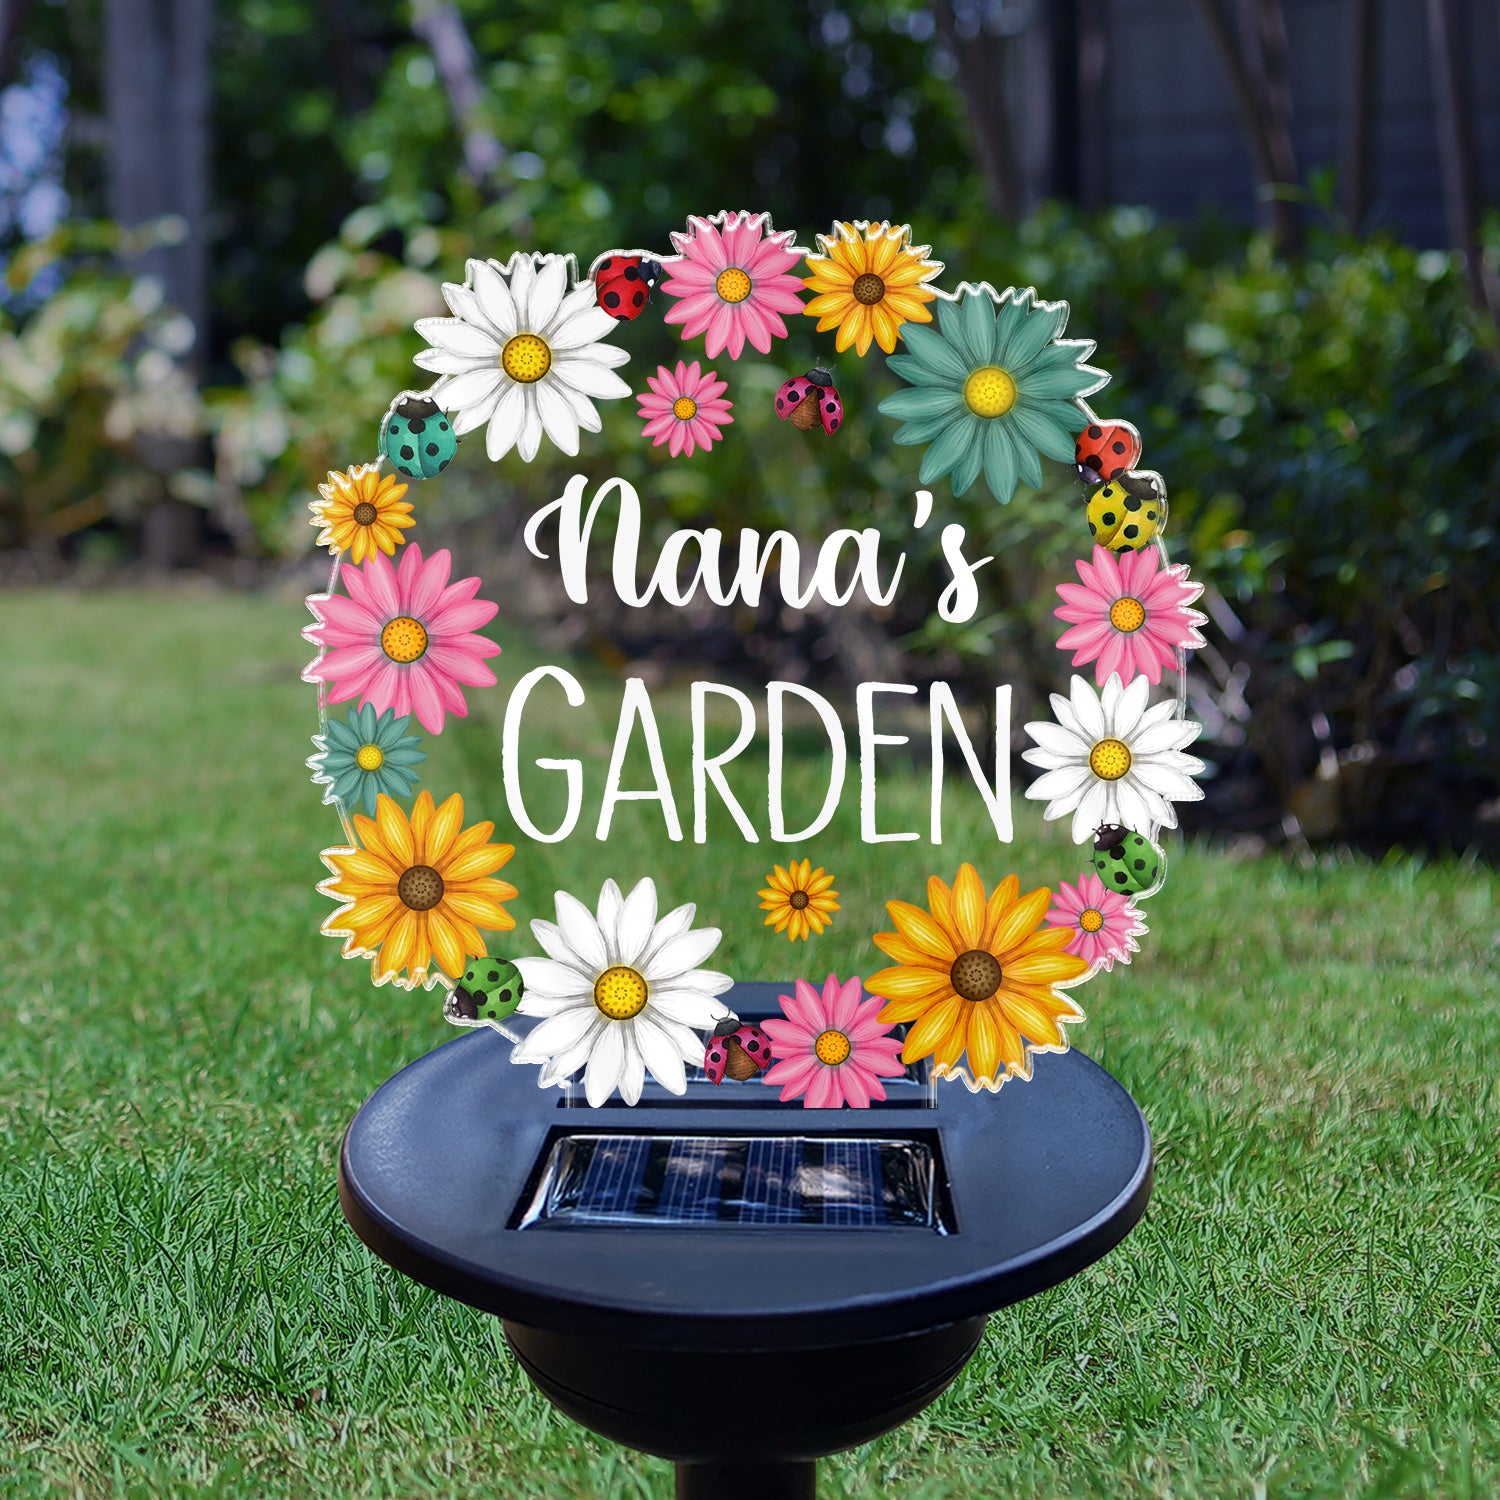 Nana's Garden - Gift For Mom, Mother, Grandma, Nana, Gardening Lovers - Personalized Solar Light